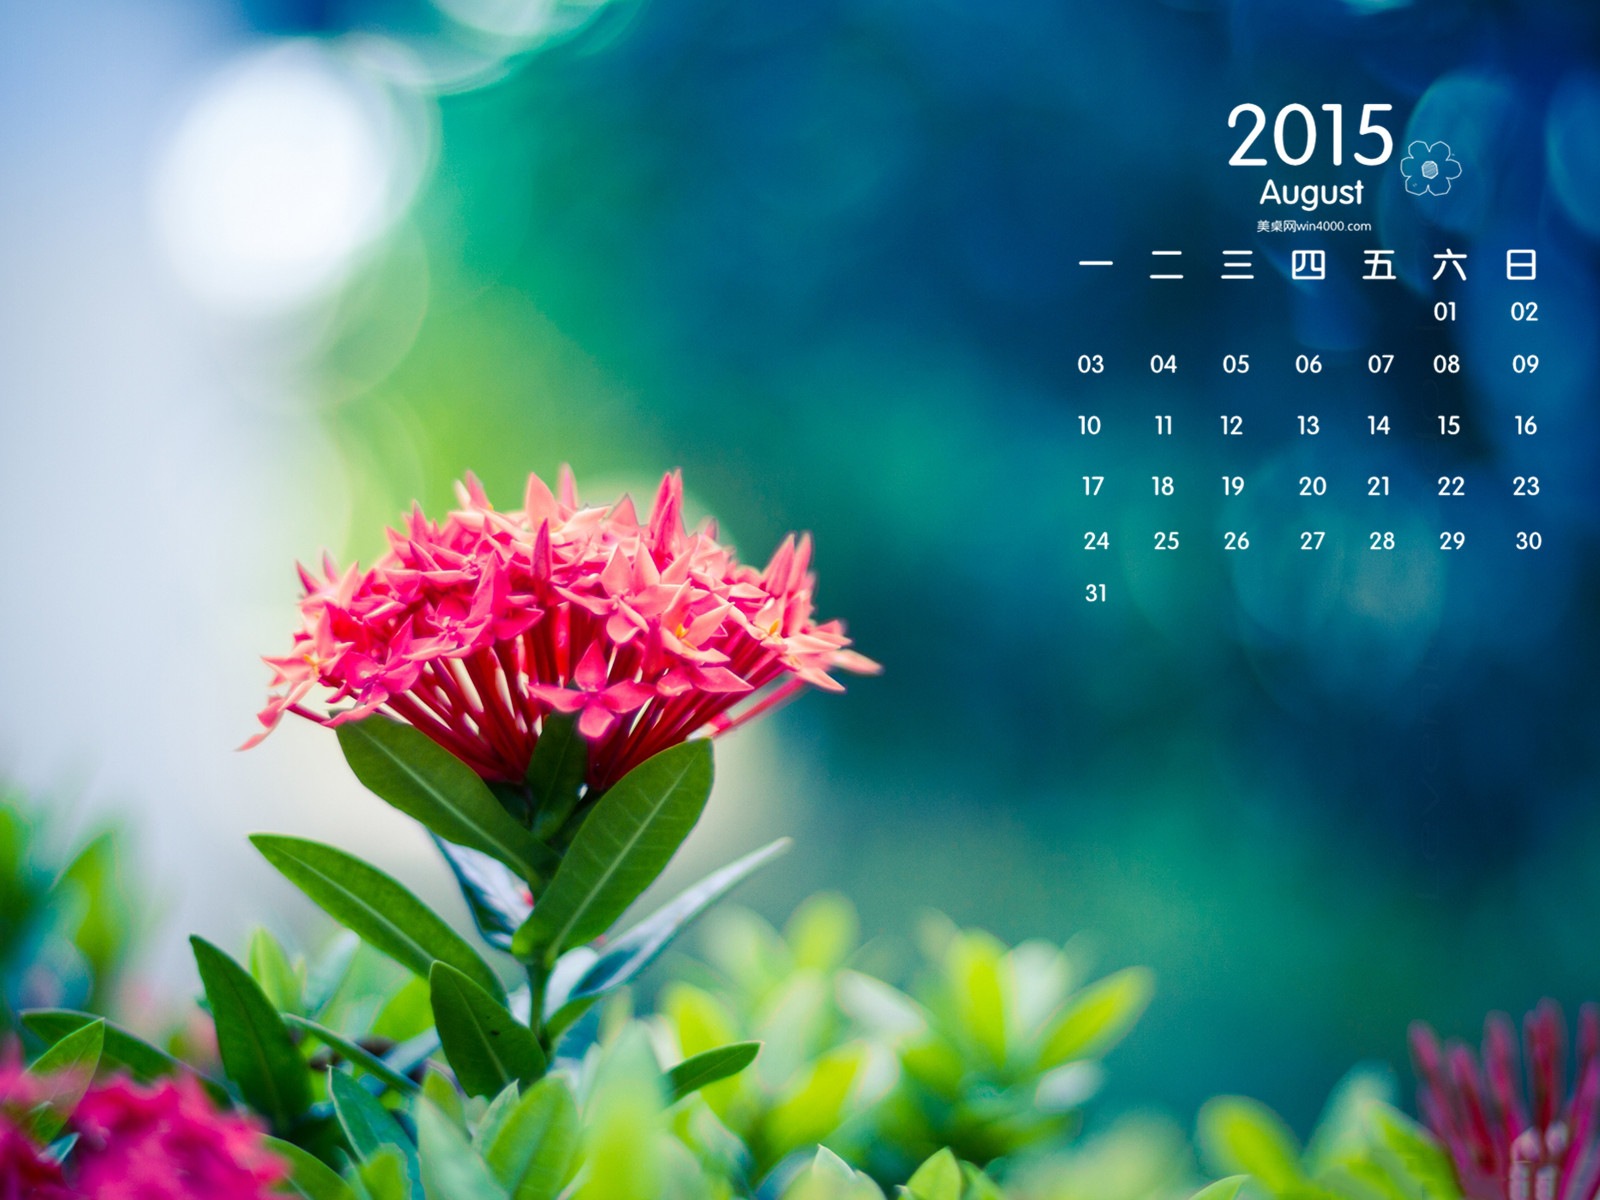 08. 2015 kalendář tapety (1) #12 - 1600x1200